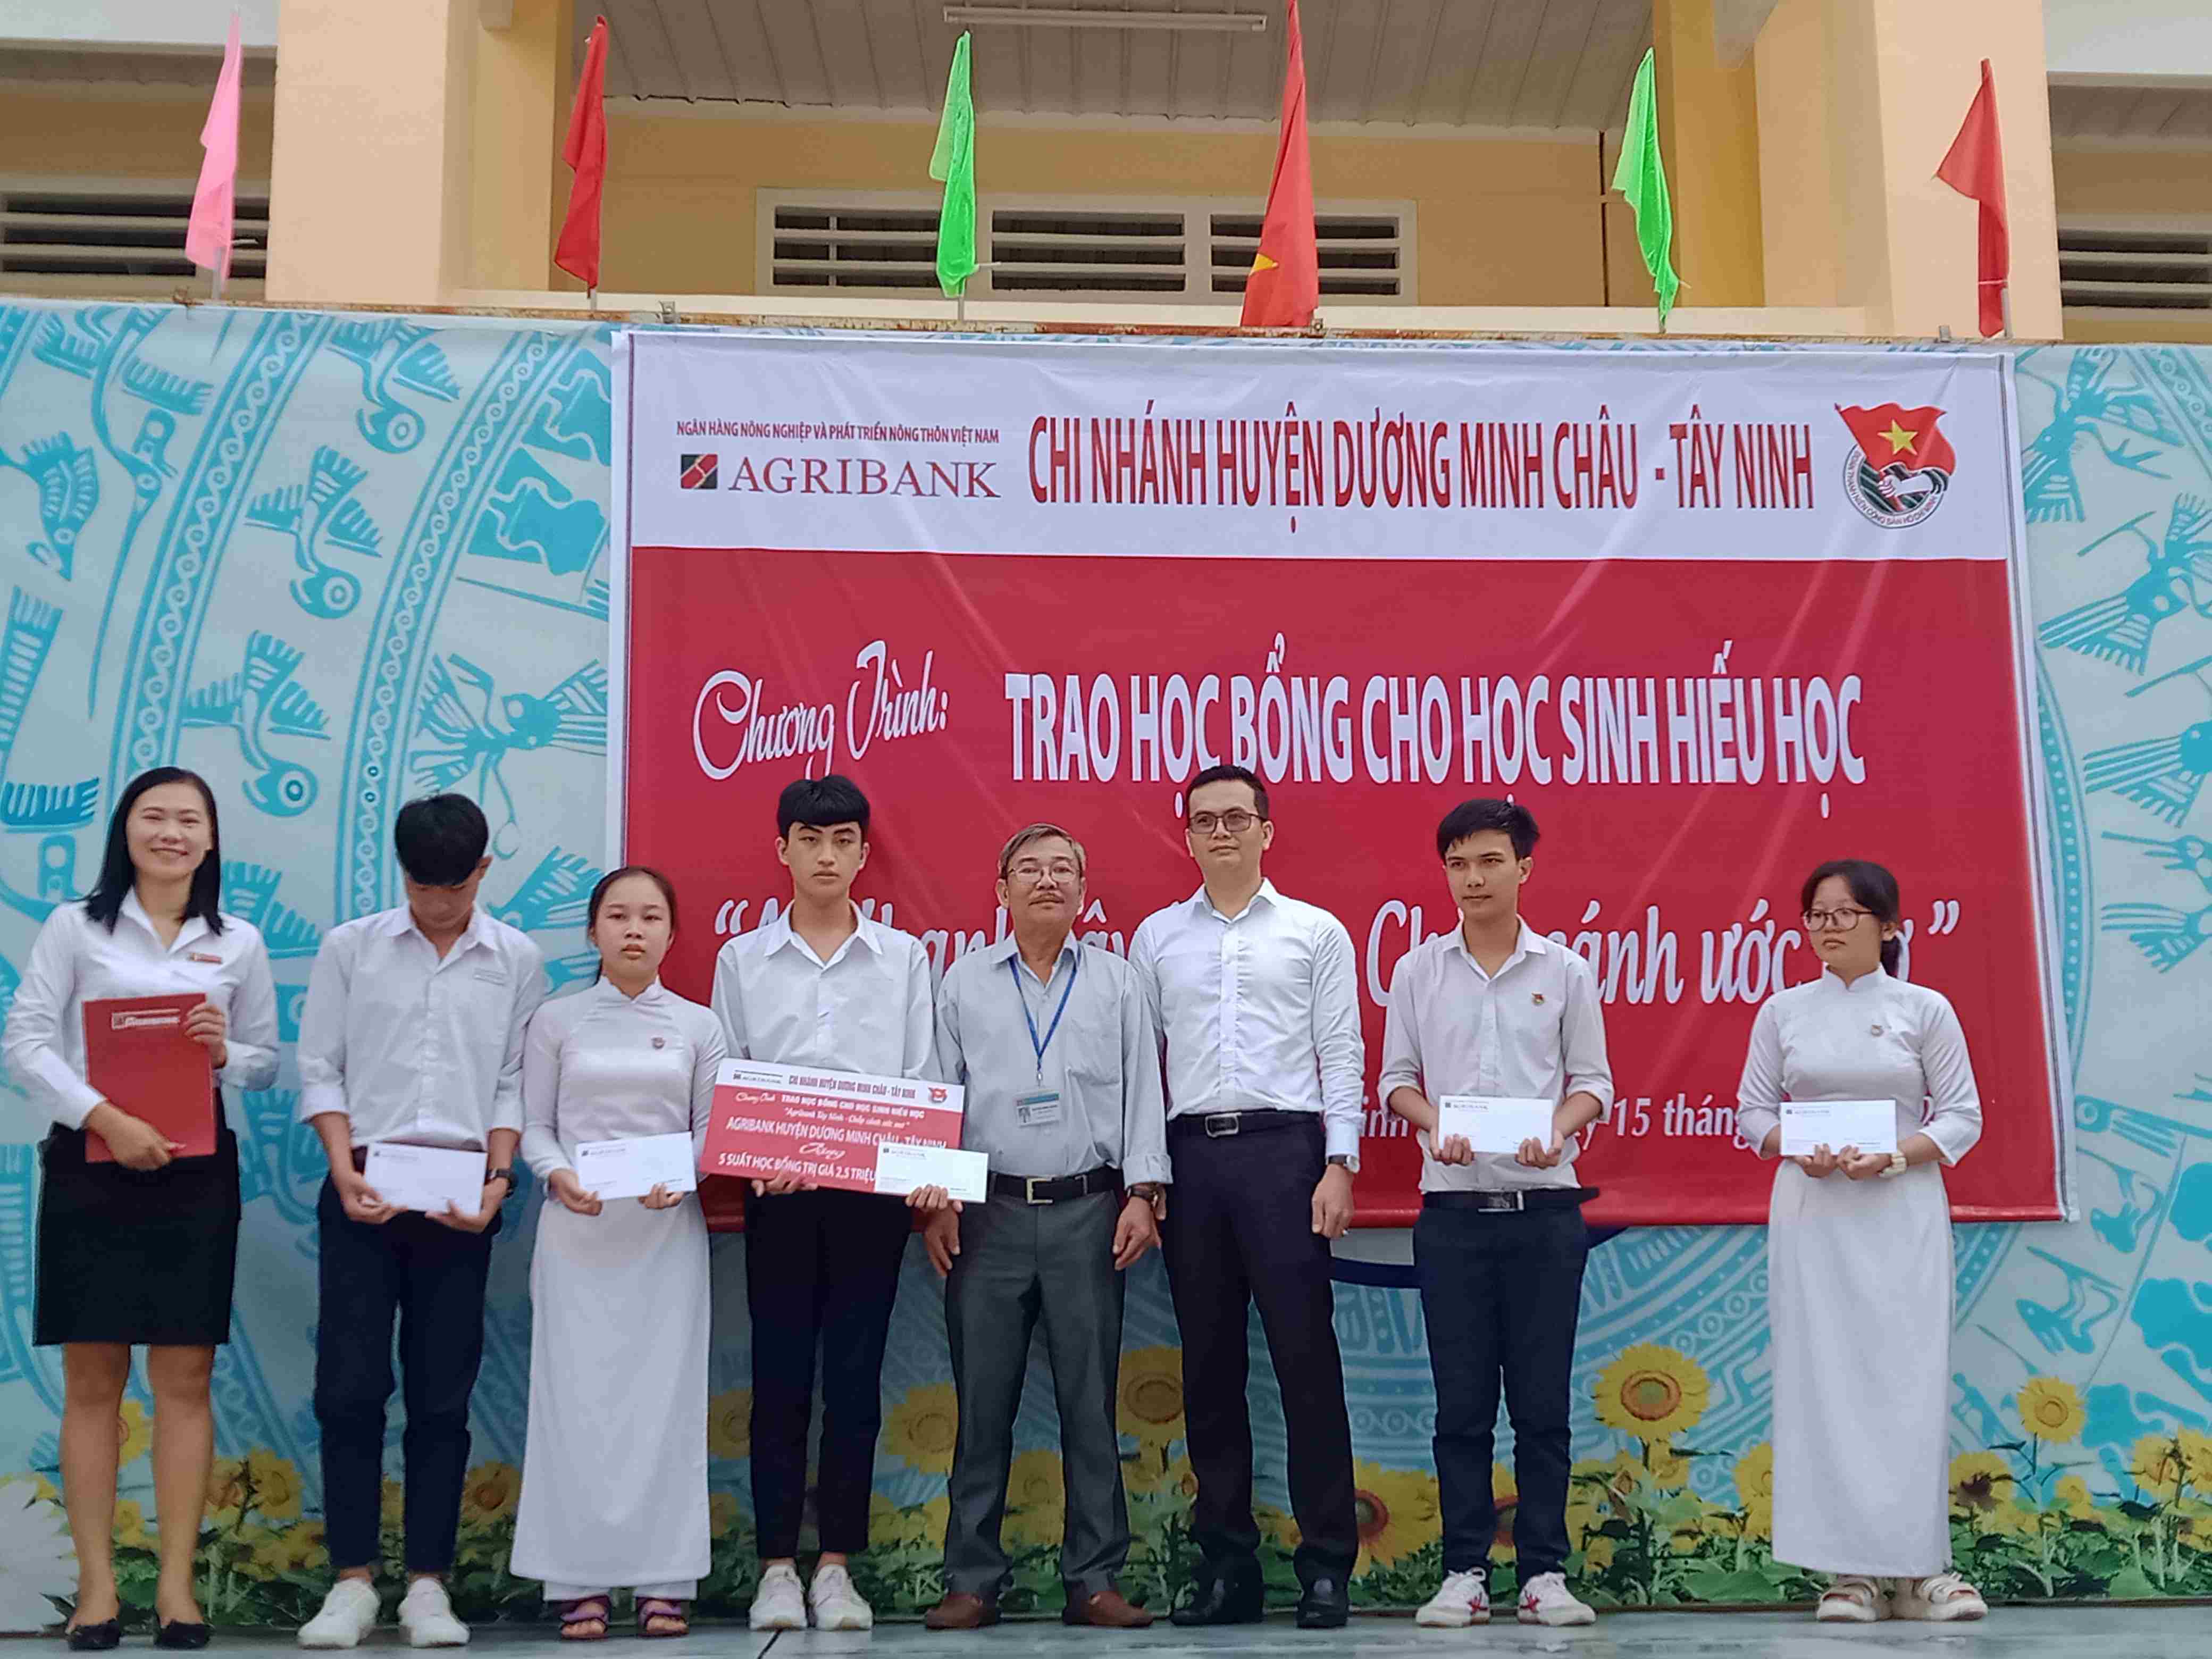 Huyện Dương Minh Châu: Trao học bổng “Agribank Tây Ninh – Chắp cánh ước mơ”